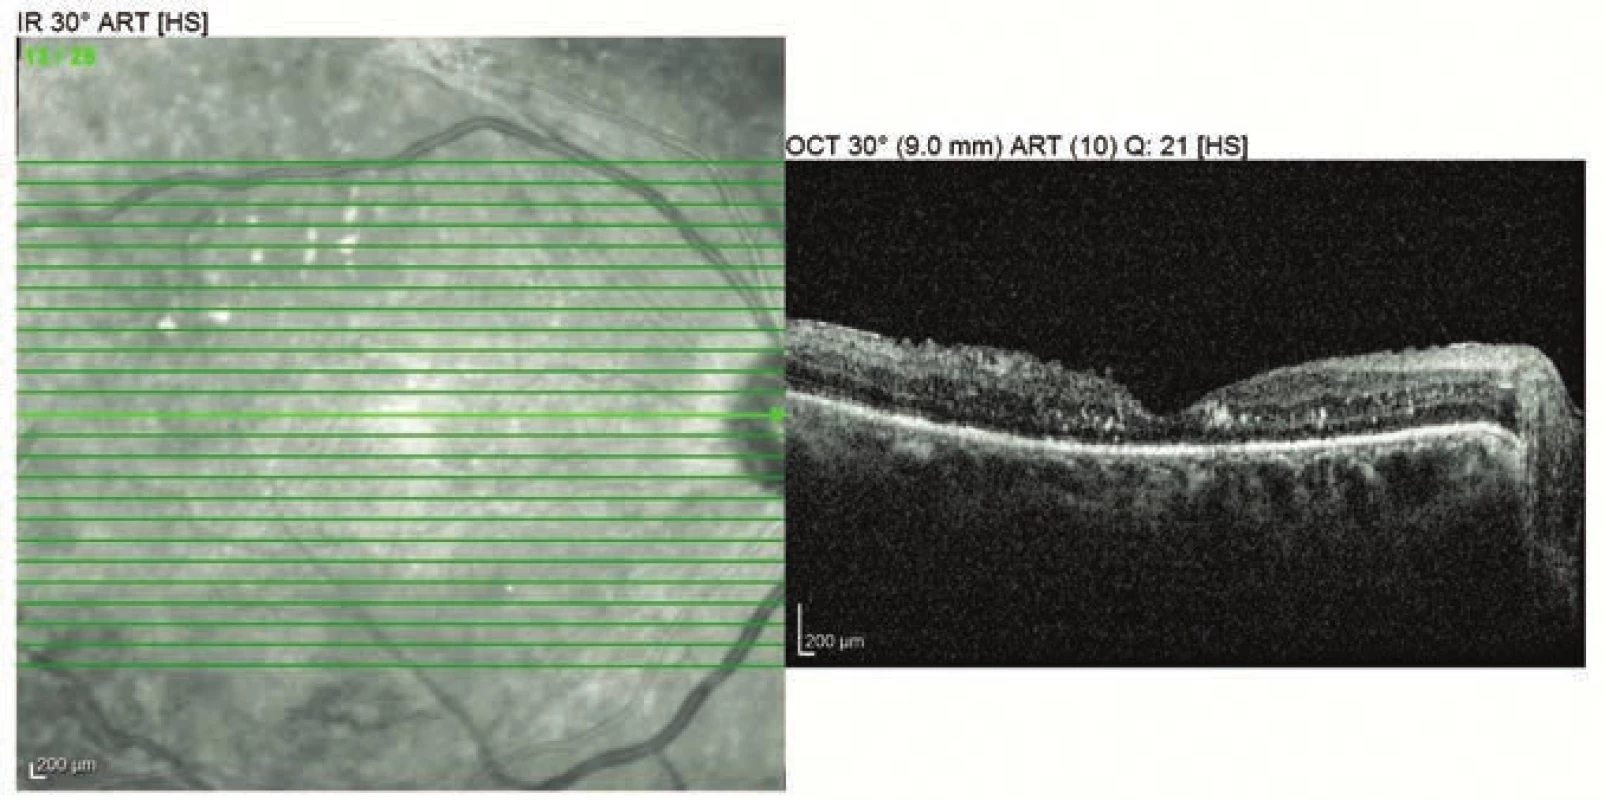 OCT vyšetření pravého oka 2 měsíce po operaci (5 měsíců po porodu)